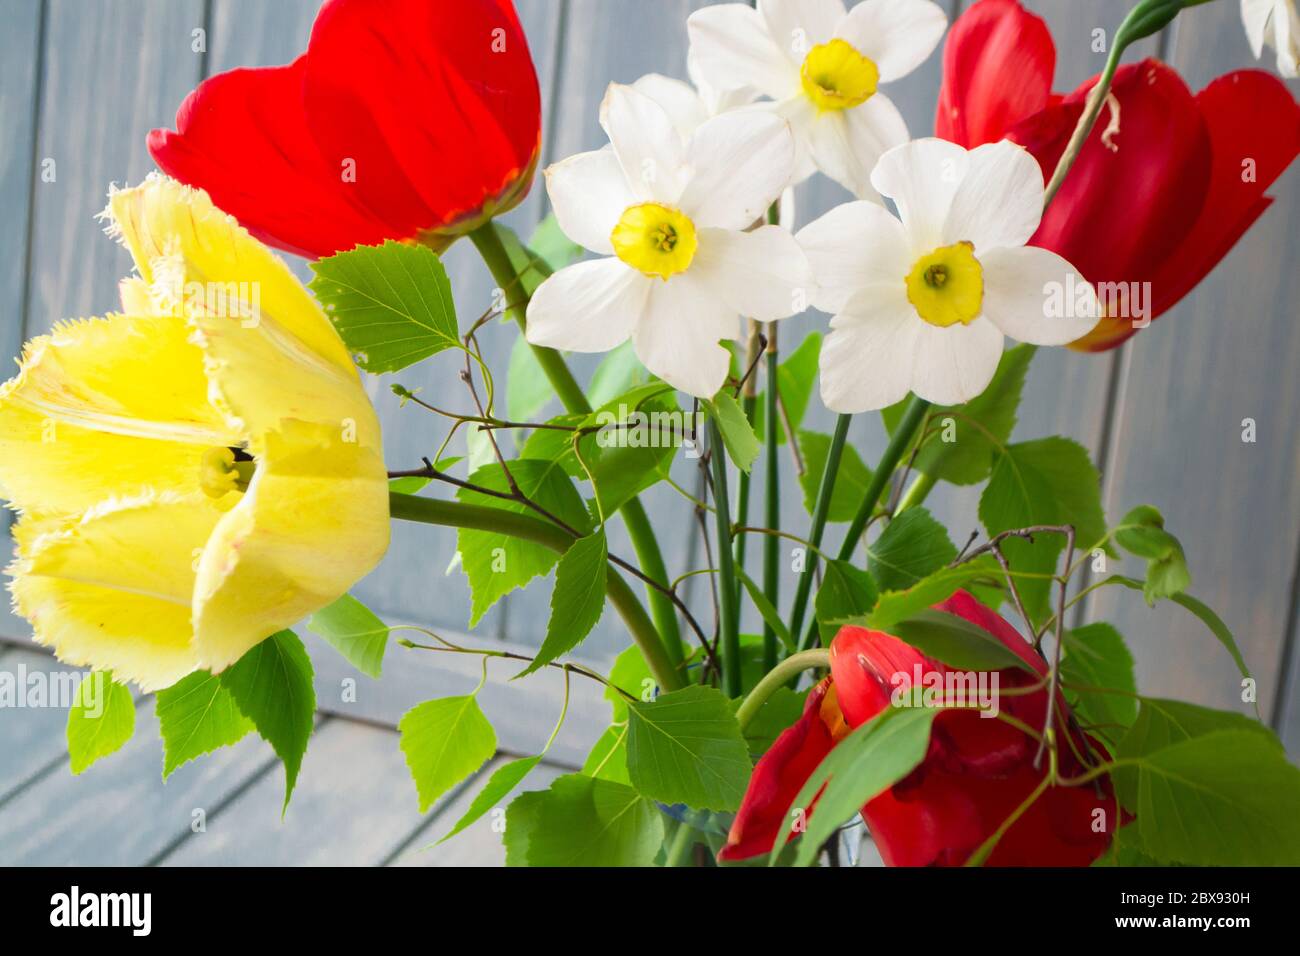 Bouquet de printemps avec tulipes jaunes et rouges, narcisse et branche de bouleau. Carte de fête des mères ou de Pâques. Gros plan Banque D'Images